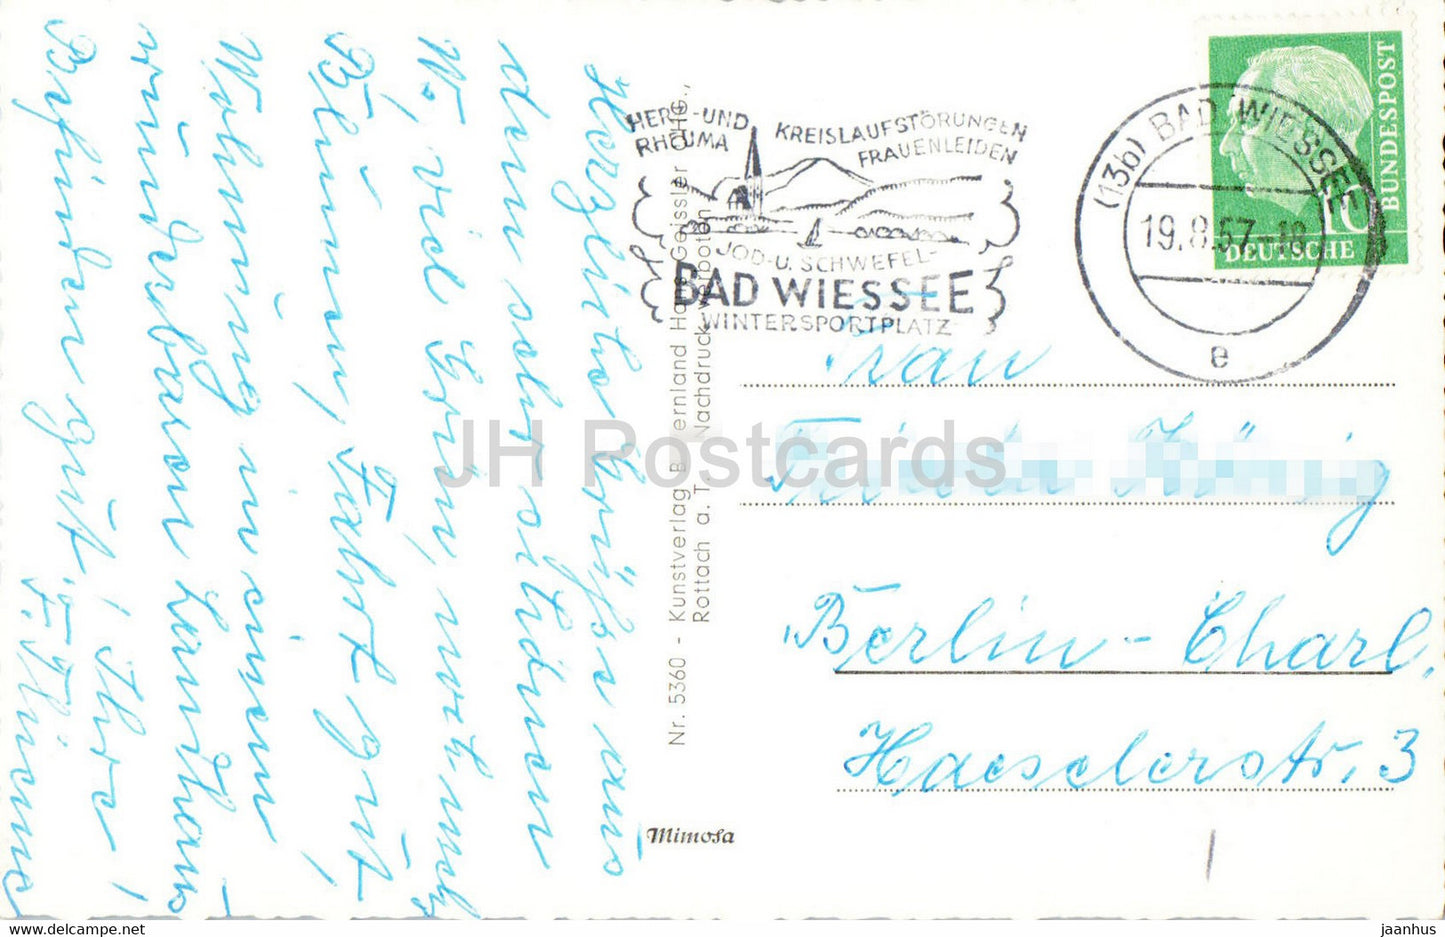 Bad Wiessee - Kurpark - Brunnenbuberl - alte Postkarte - 1957 - Deutschland - gebraucht